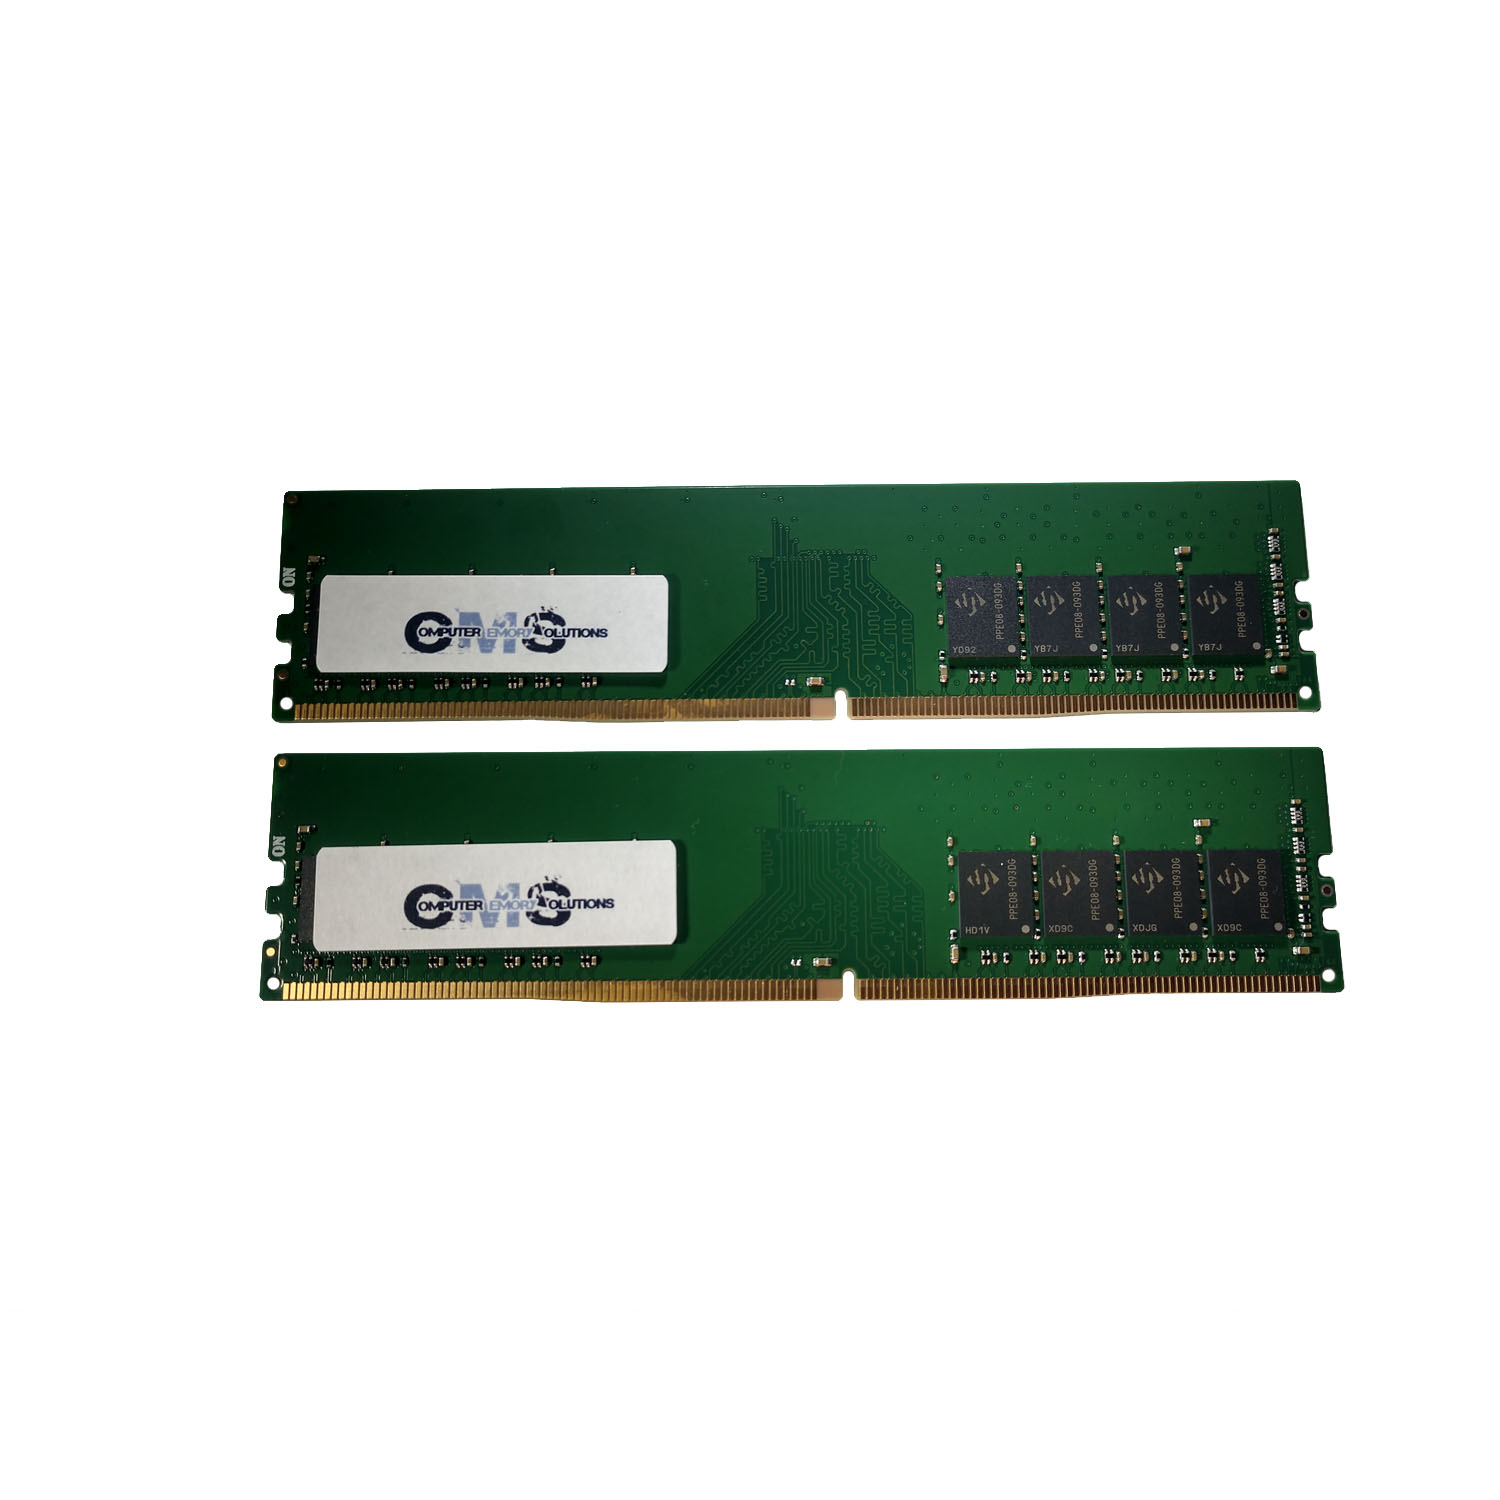 全3色/黒/赤/ベージュ CMS 32GB (2X16GB) DDR4 19200 2400MHZ Non ECC SODIMM Memory Ram  Upgrade Compatible with HP/Compaq? Omen Notebook 17-w008ng, 17-w033dx,  17-w047nr, 17-w